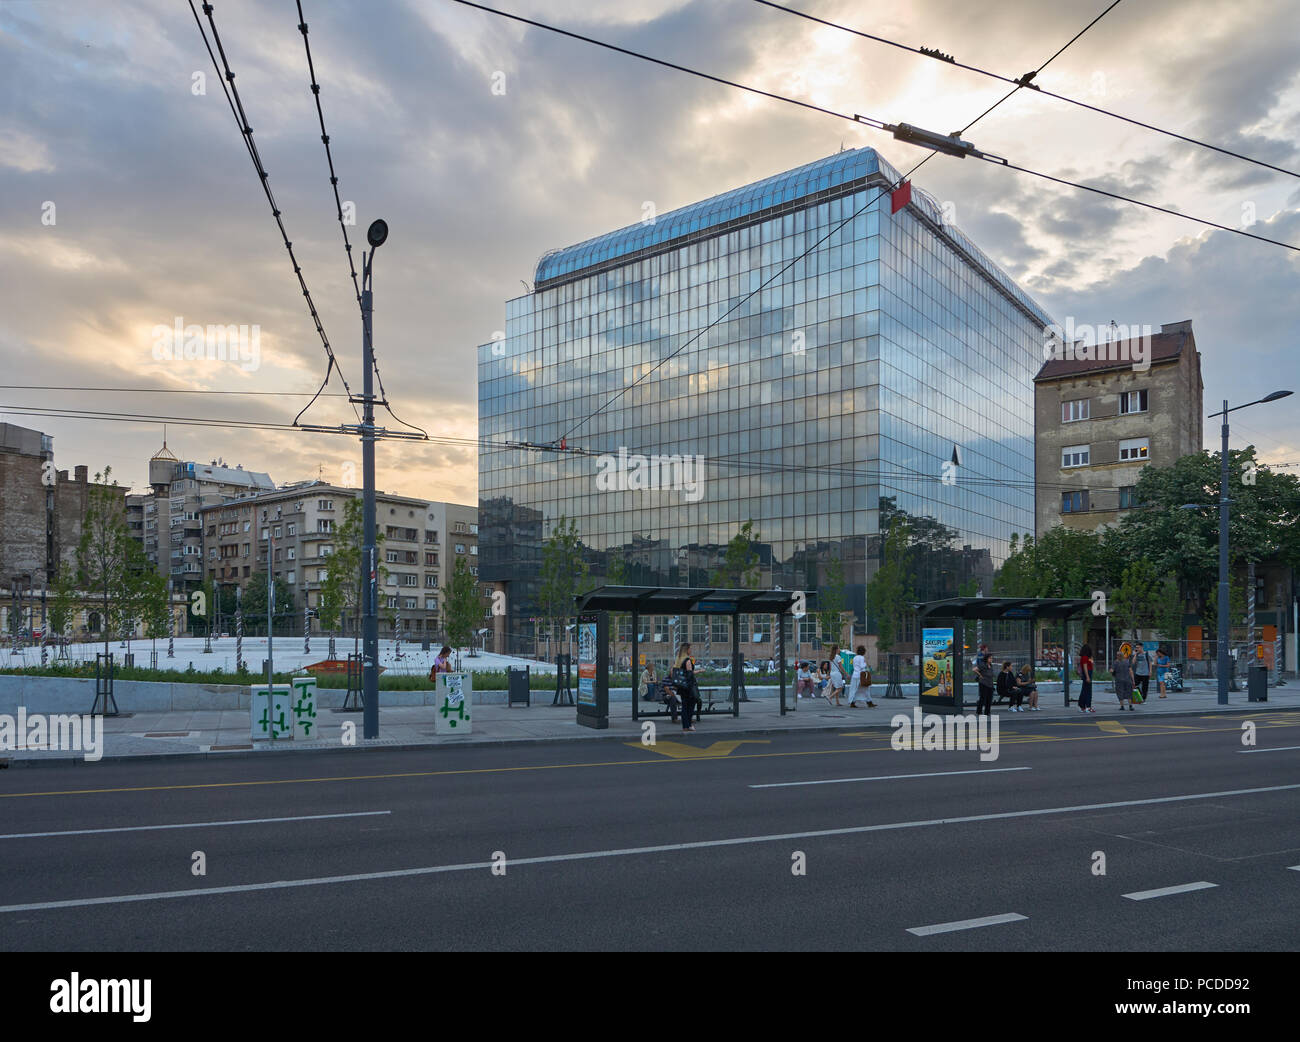 A Belgrado, in Serbia - Maggio 04, 2018: vista serale in un moderno edificio di uffici governativi su Kralja Milana street. Foto Stock